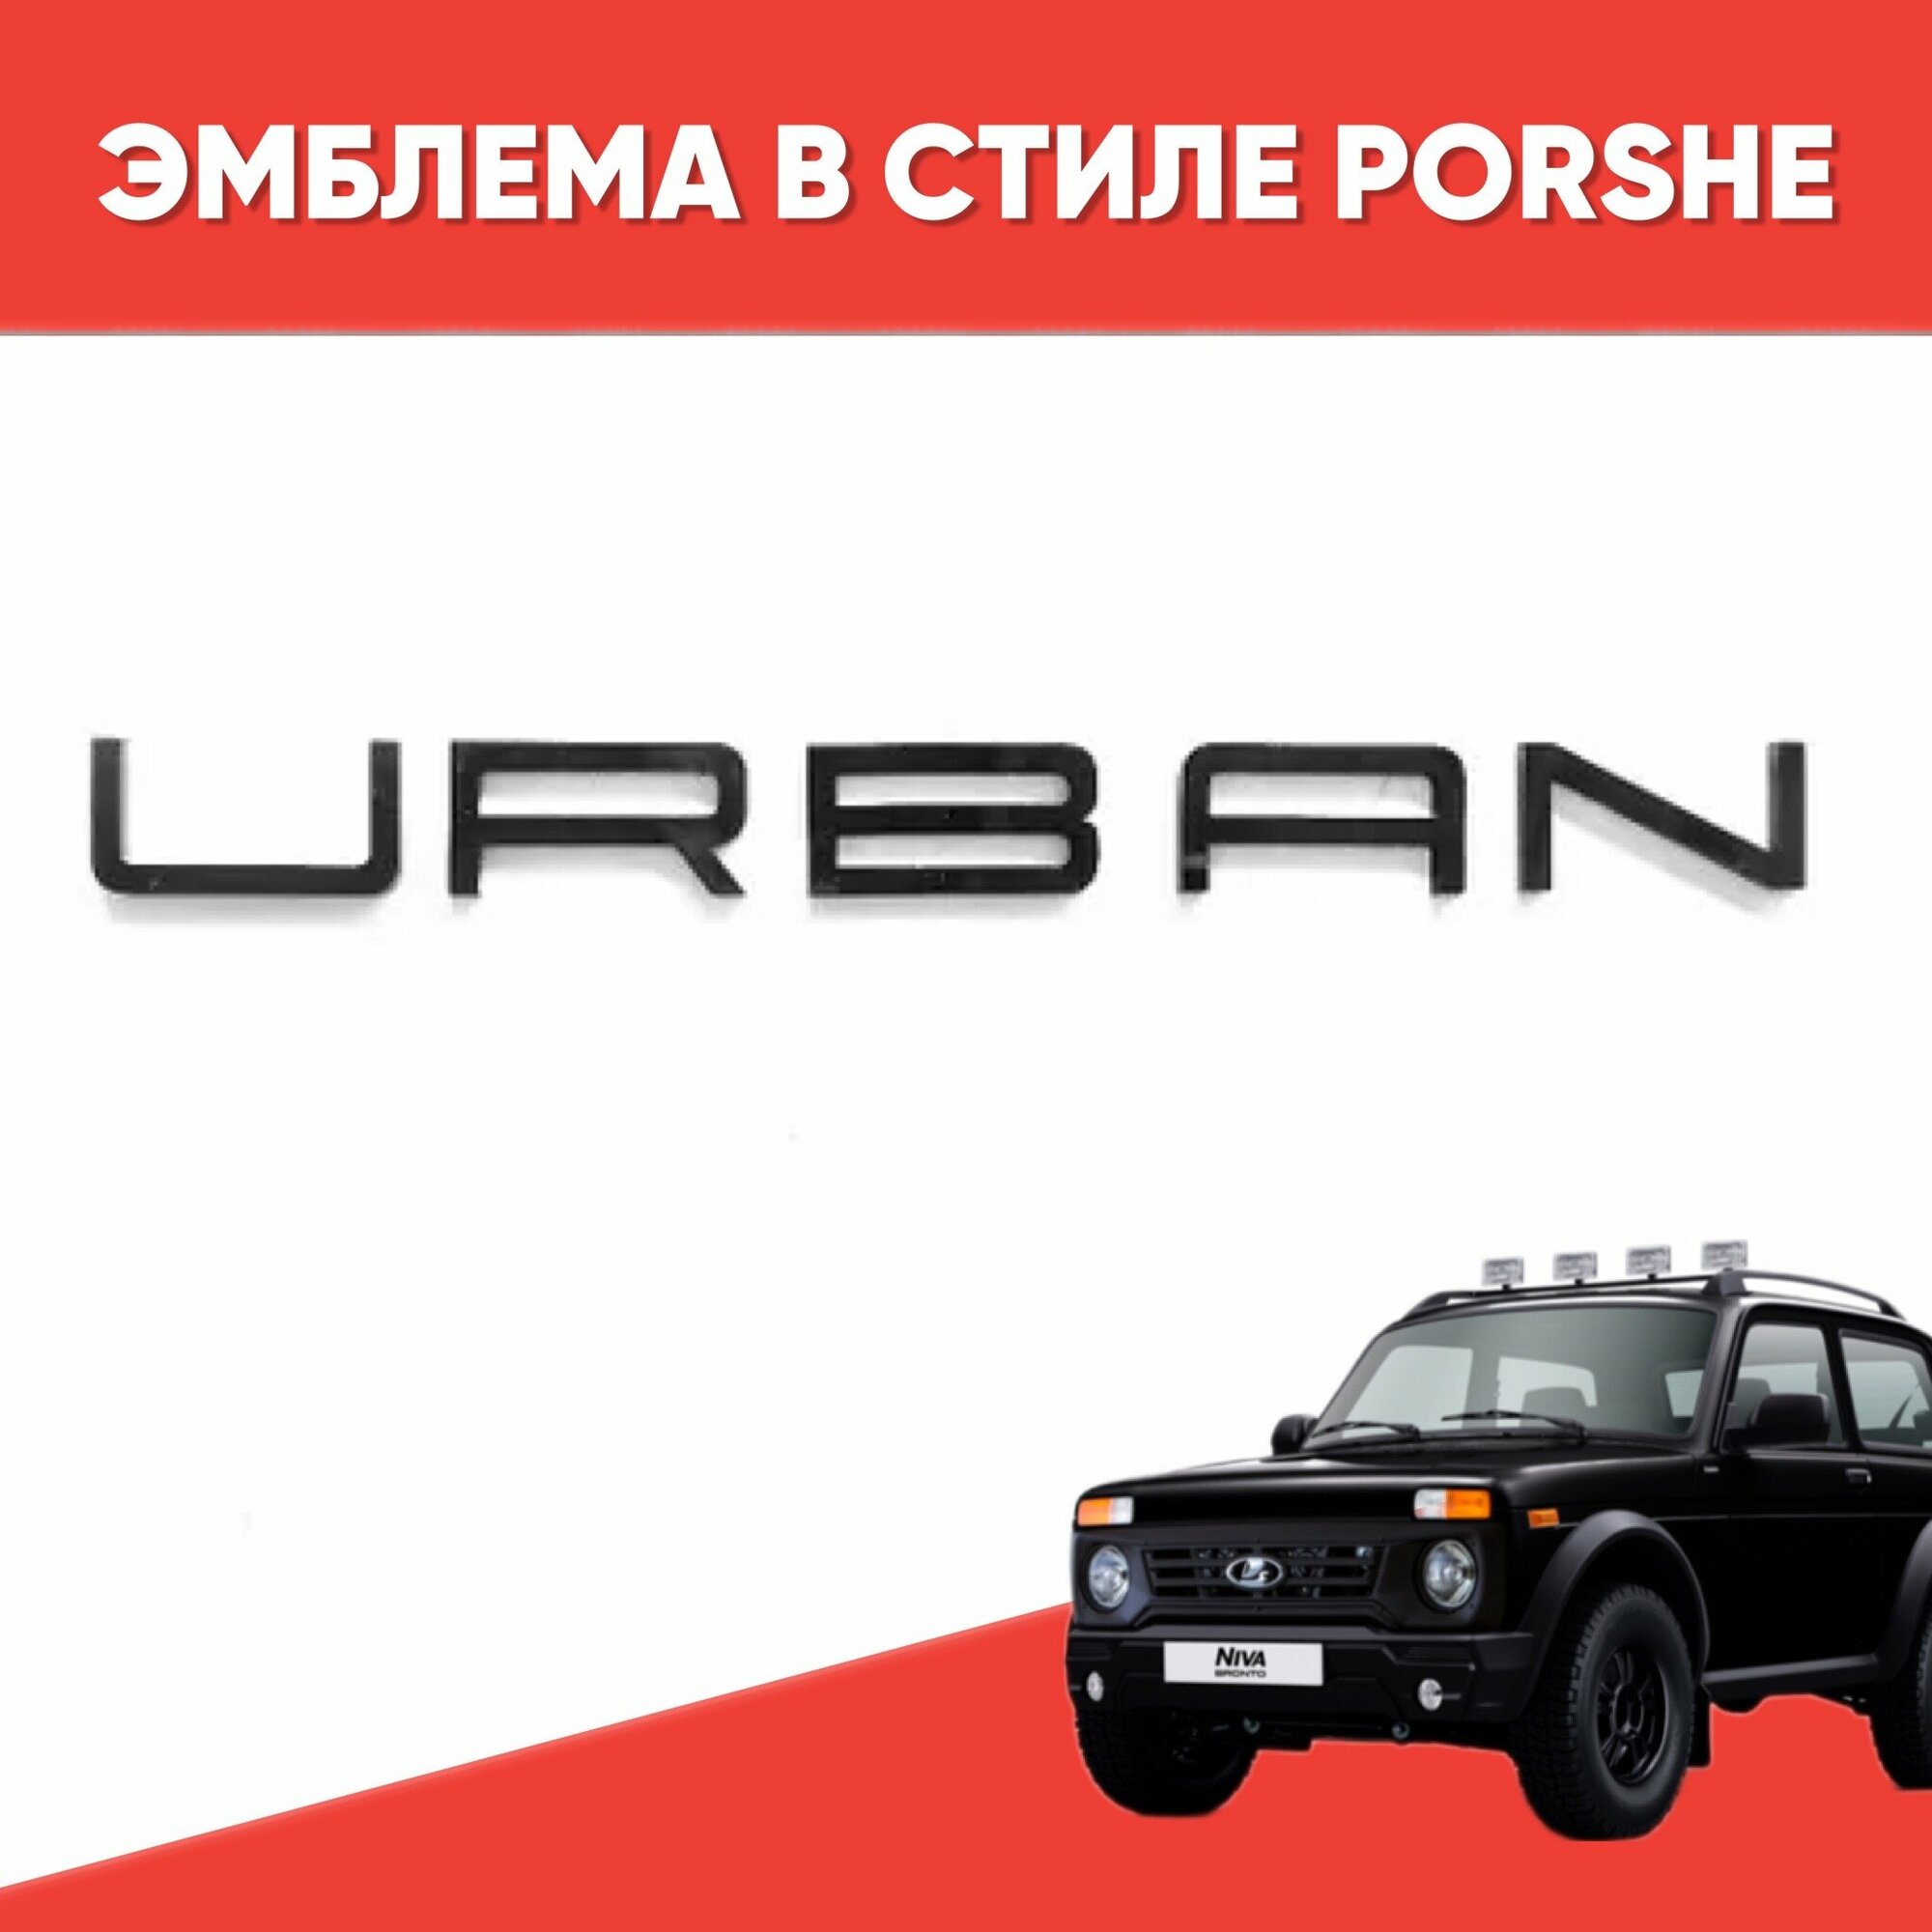 Орнамент-шильдик URBAN в стиле PORSHE черный глянец 1 шт для Niva Urban / Эмблема «Урбан» в стиле Порше черный глянец 1 шт.